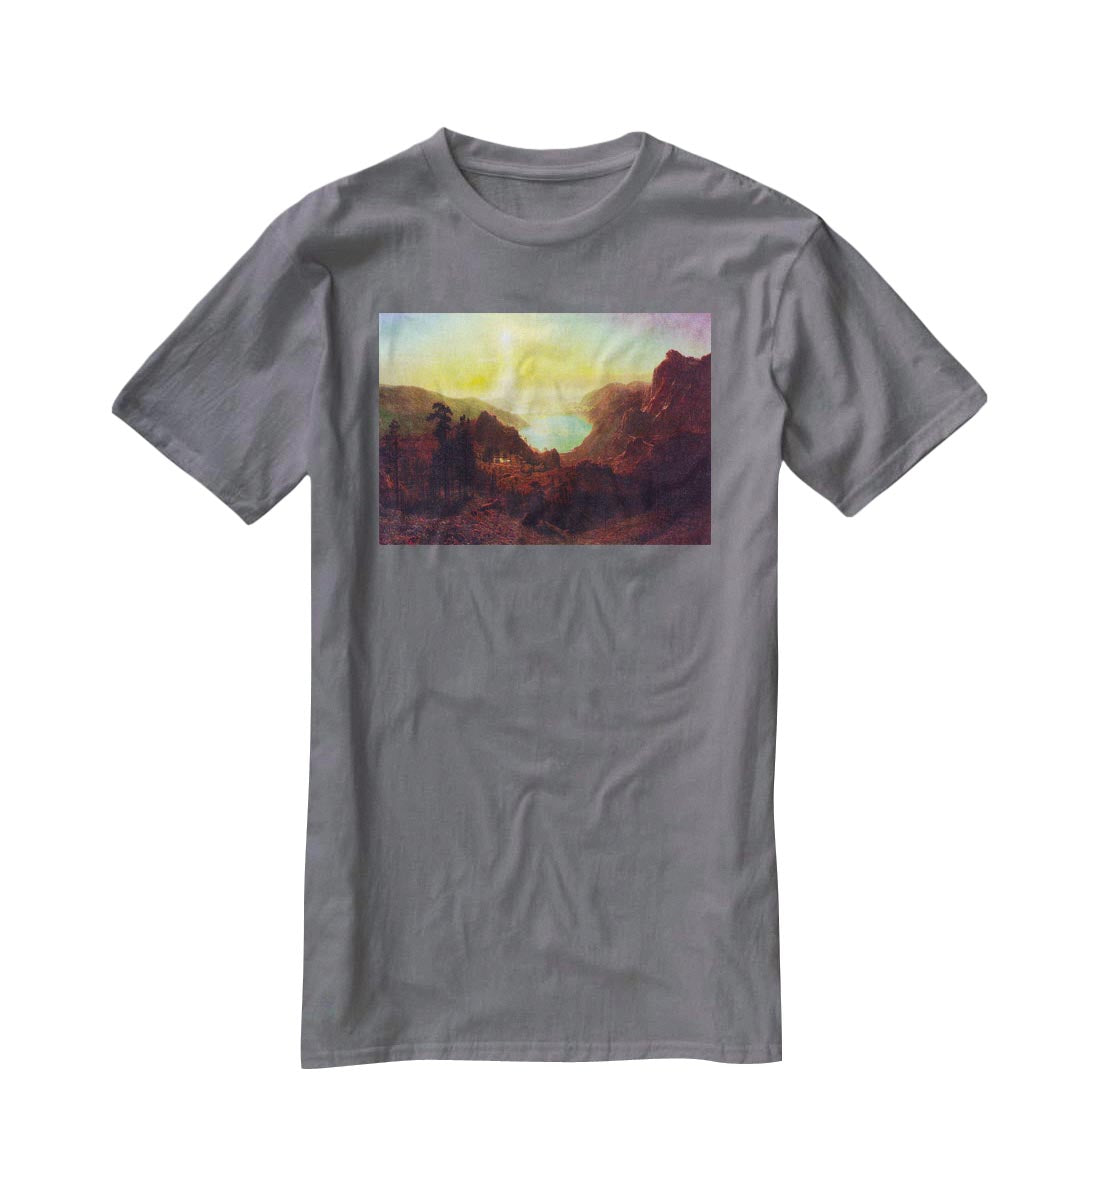 Donner Lake 2 by Bierstadt T-Shirt - Canvas Art Rocks - 3